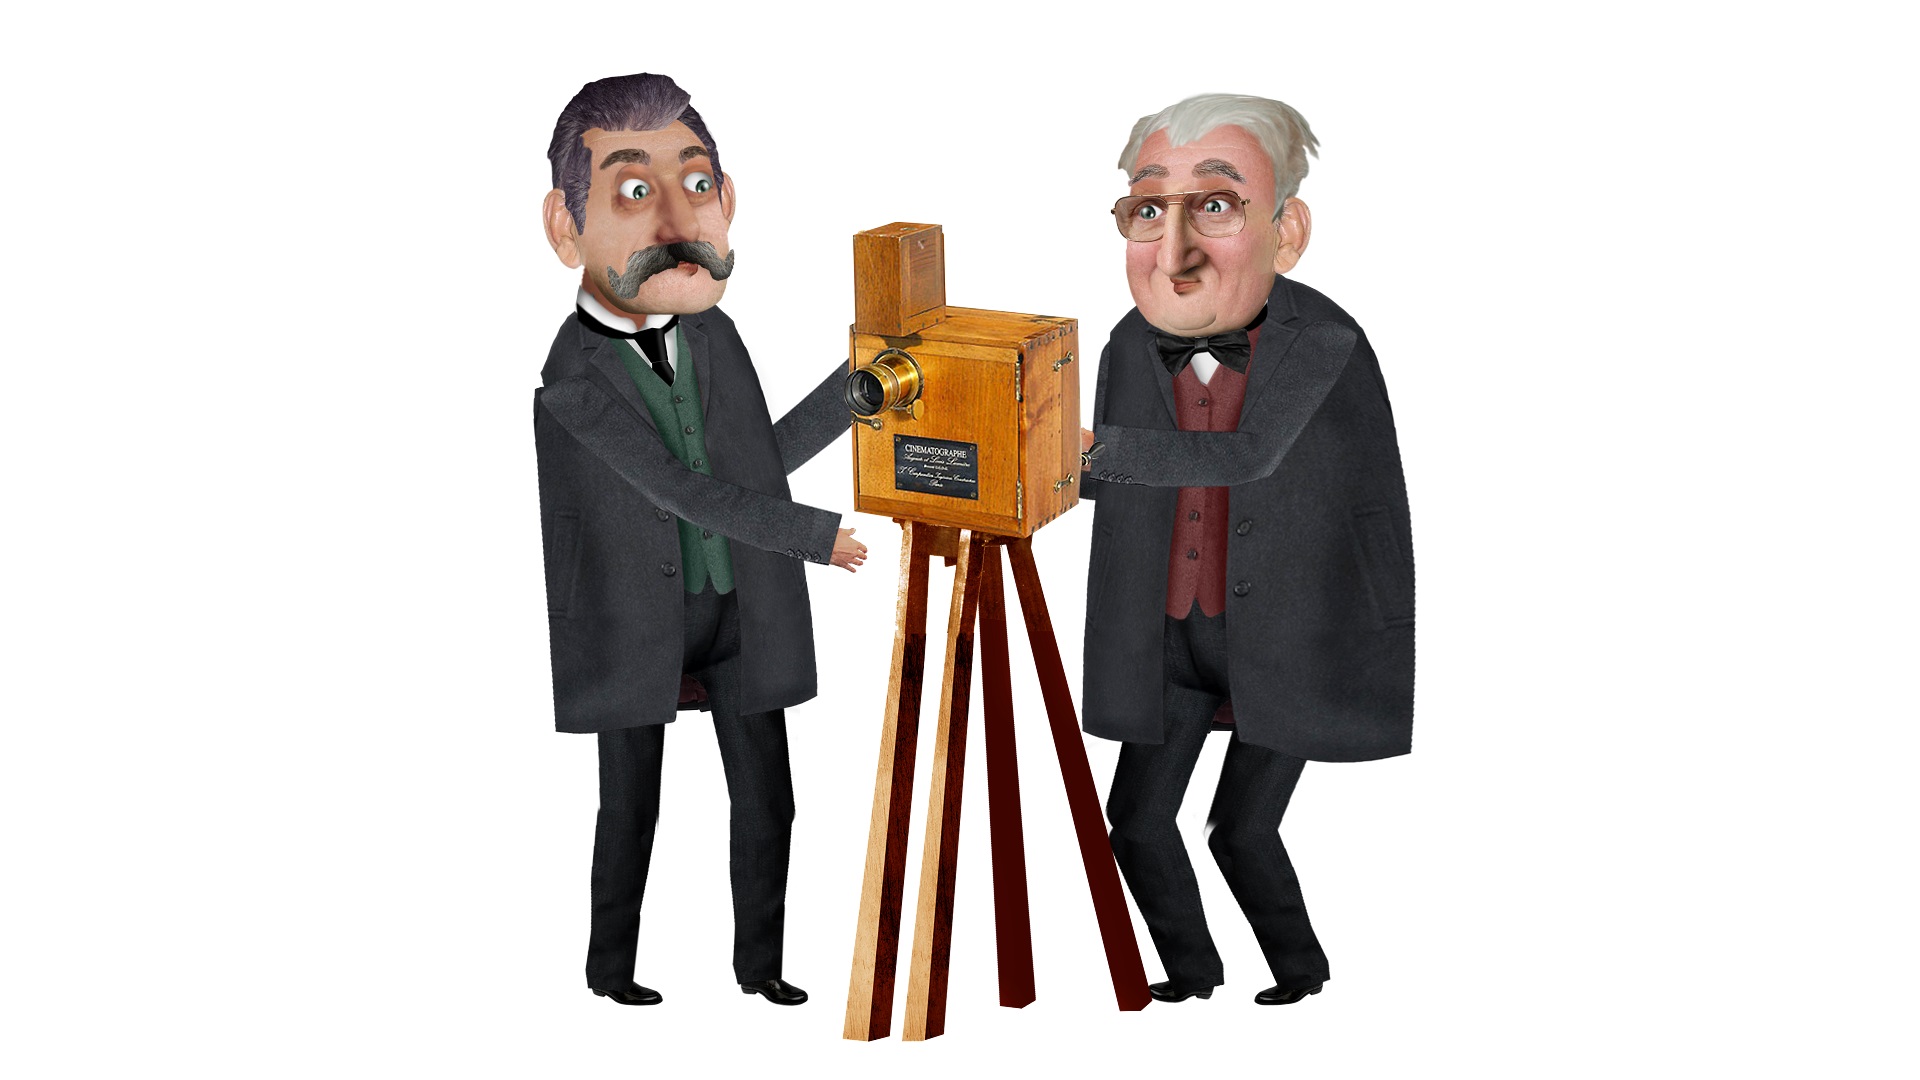 Animação reúne os irmãos Lumière e o ilusionista George Méliès, considerados pais da sétima arte